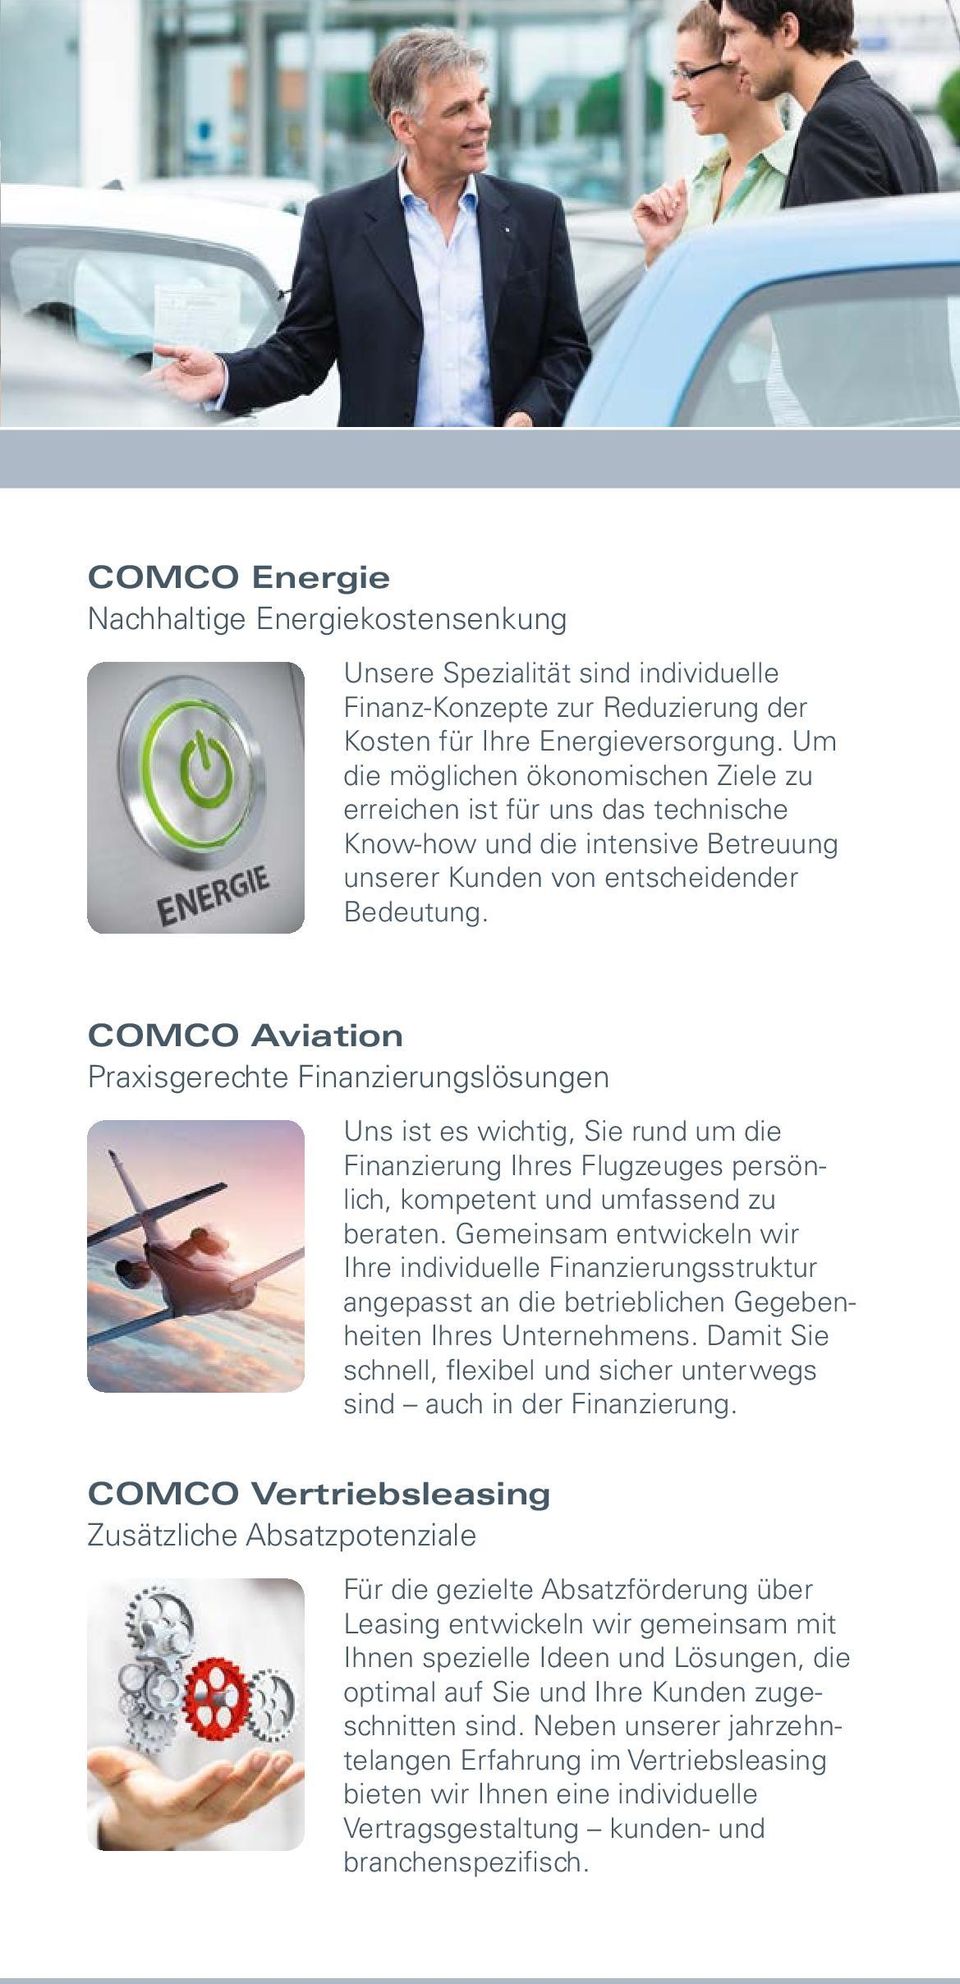 COMCO Aviation Praxisgerechte Finanzierungslösungen Uns ist es wichtig, Sie rund um die Finanzierung Ihres Flugzeuges persönlich, kompetent und umfassend zu beraten.